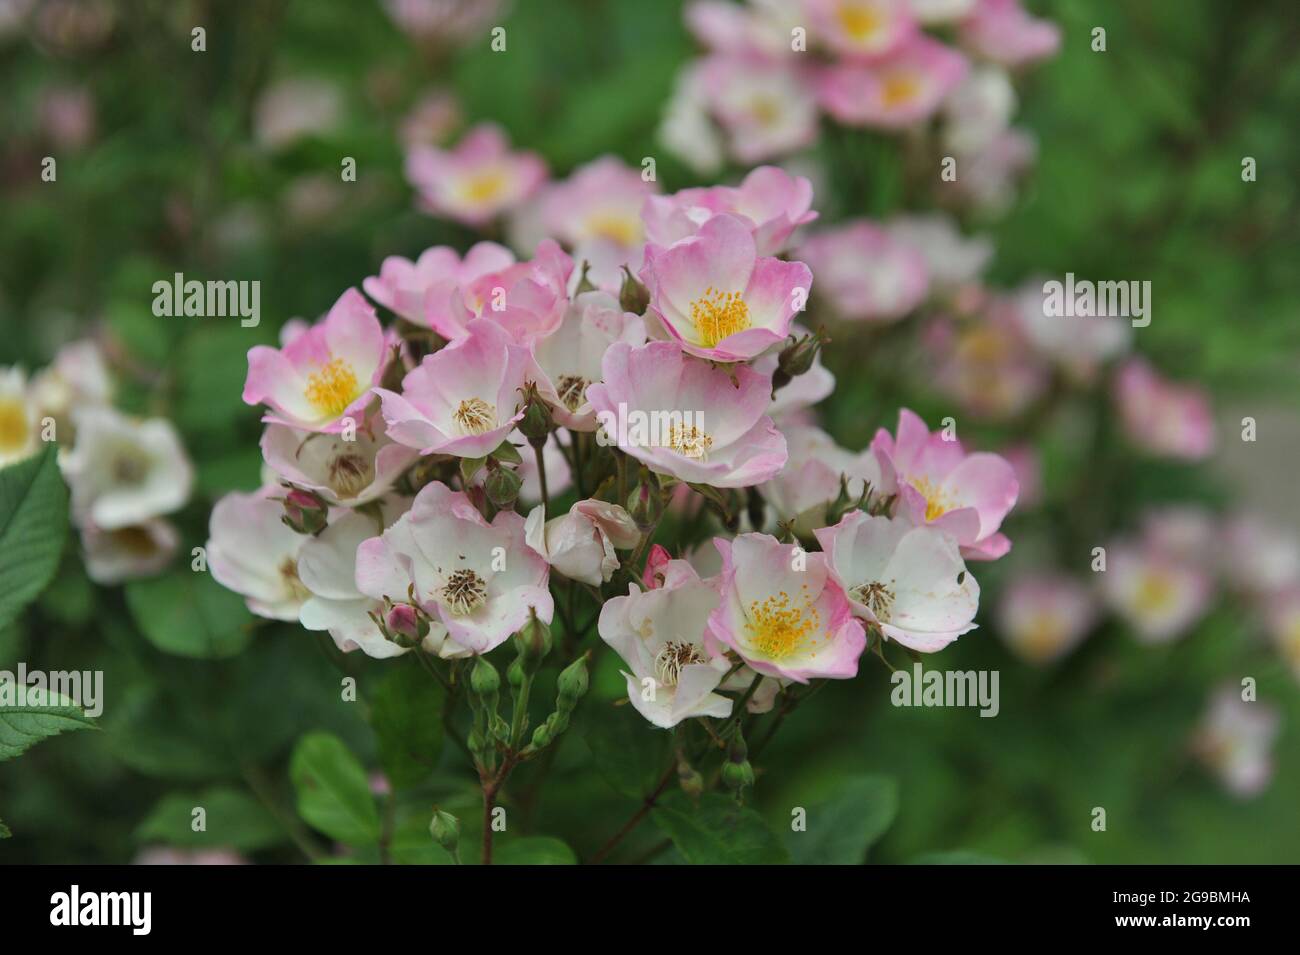 Rosa und weiße Strauchrose (Rosa) Dancing Girl blüht im Juni in einem Garten Stockfoto